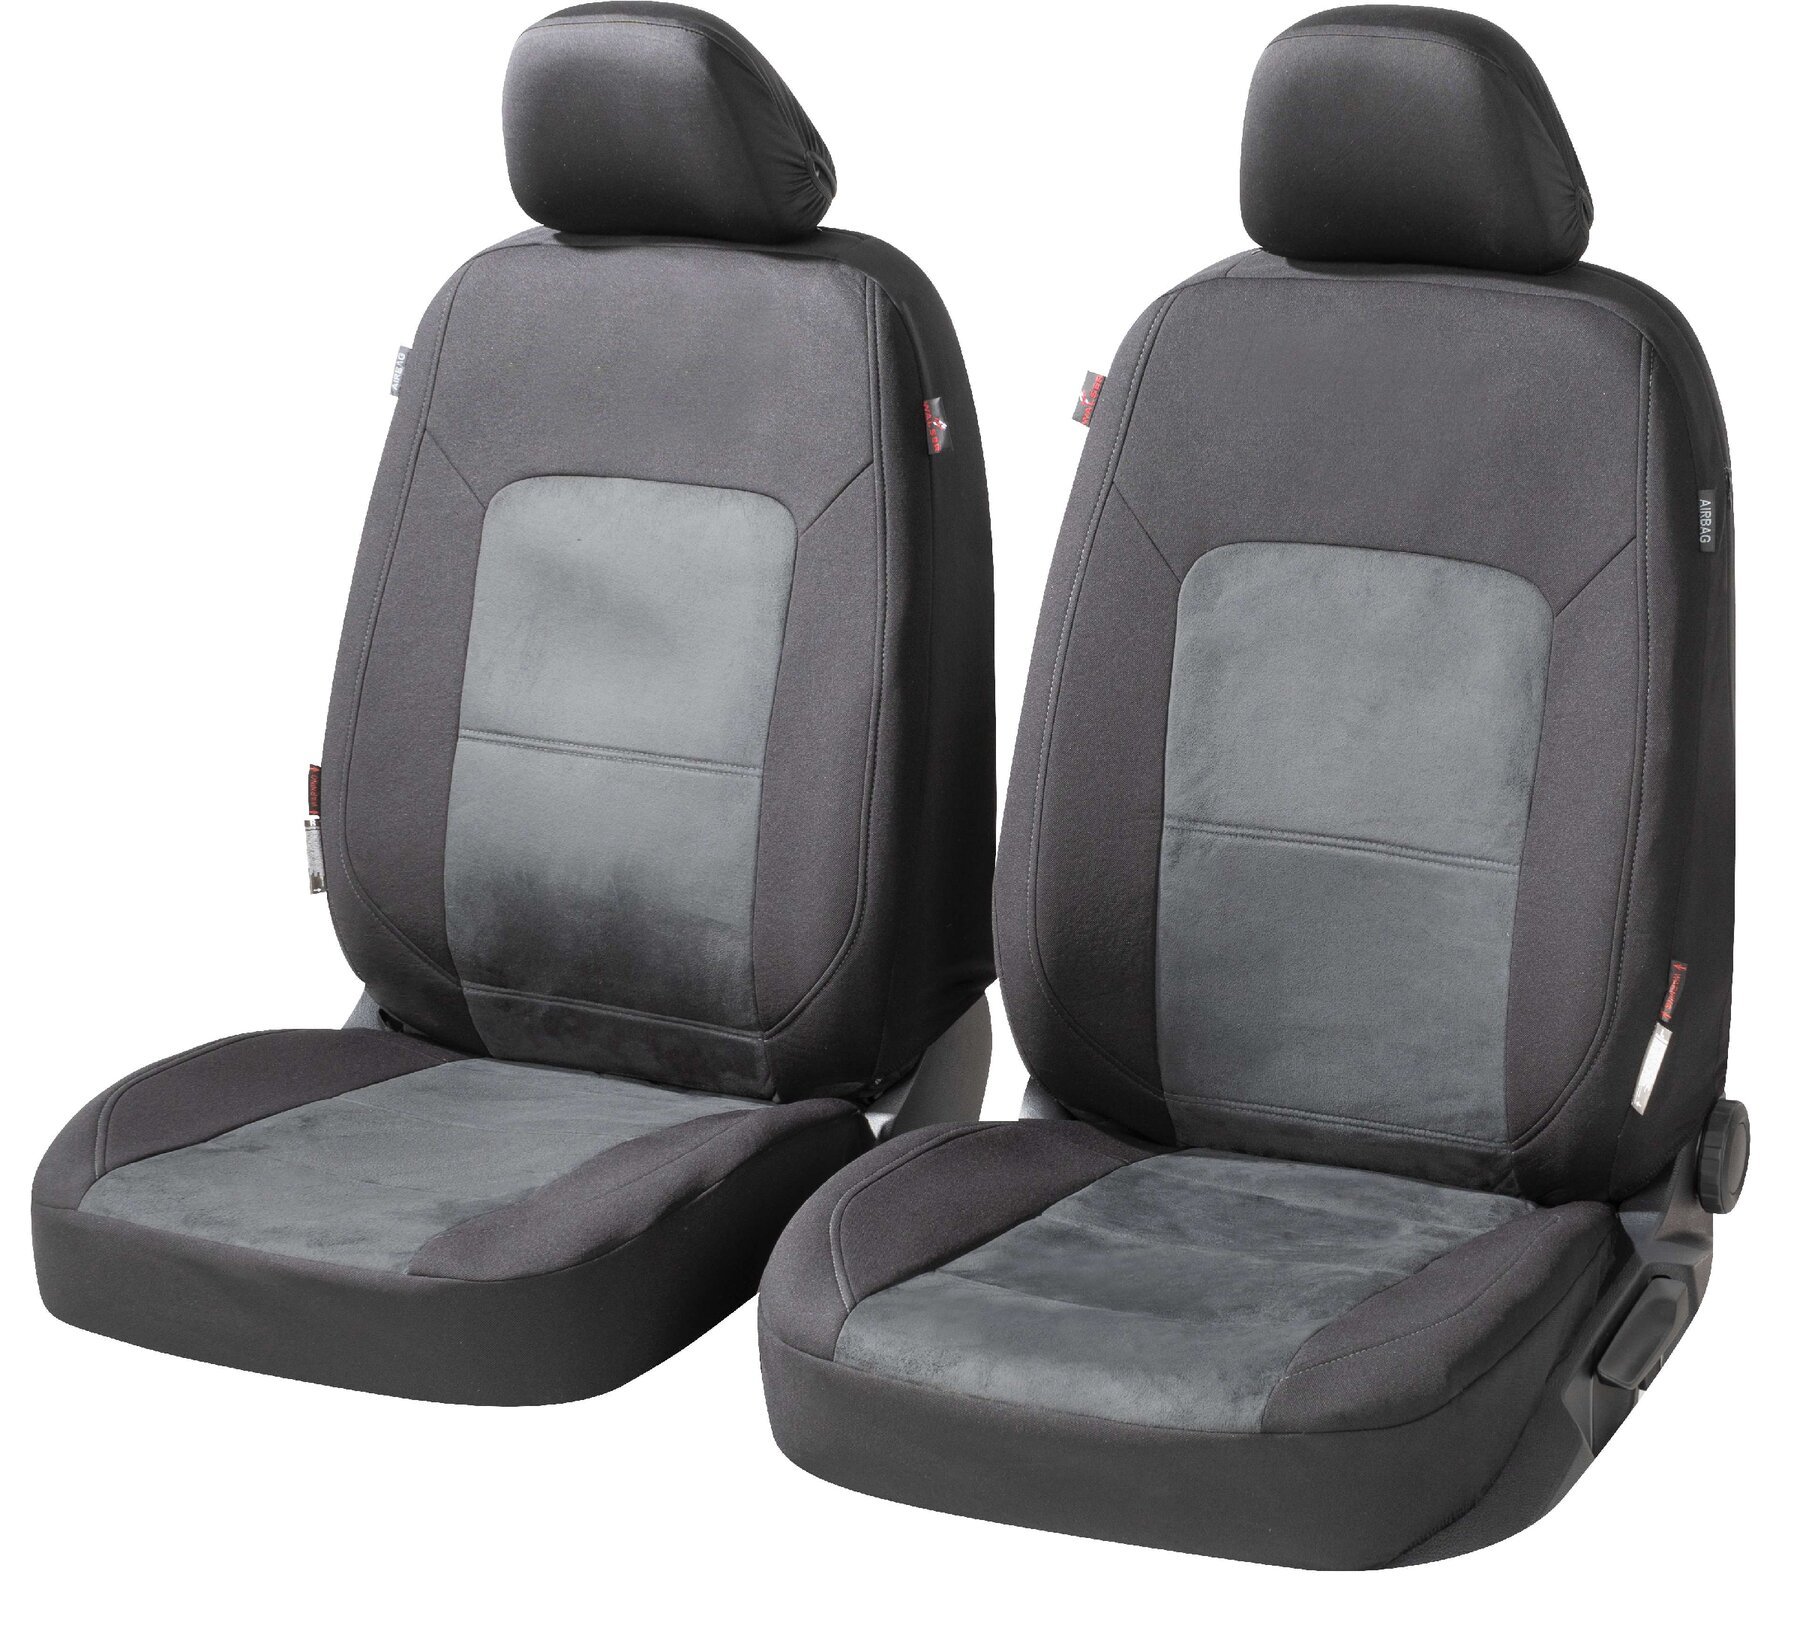 ZIPP IT Premium Autositzbezüge Ellington für zwei Vordersitze mit Reißverschluss-System schwarz/grau